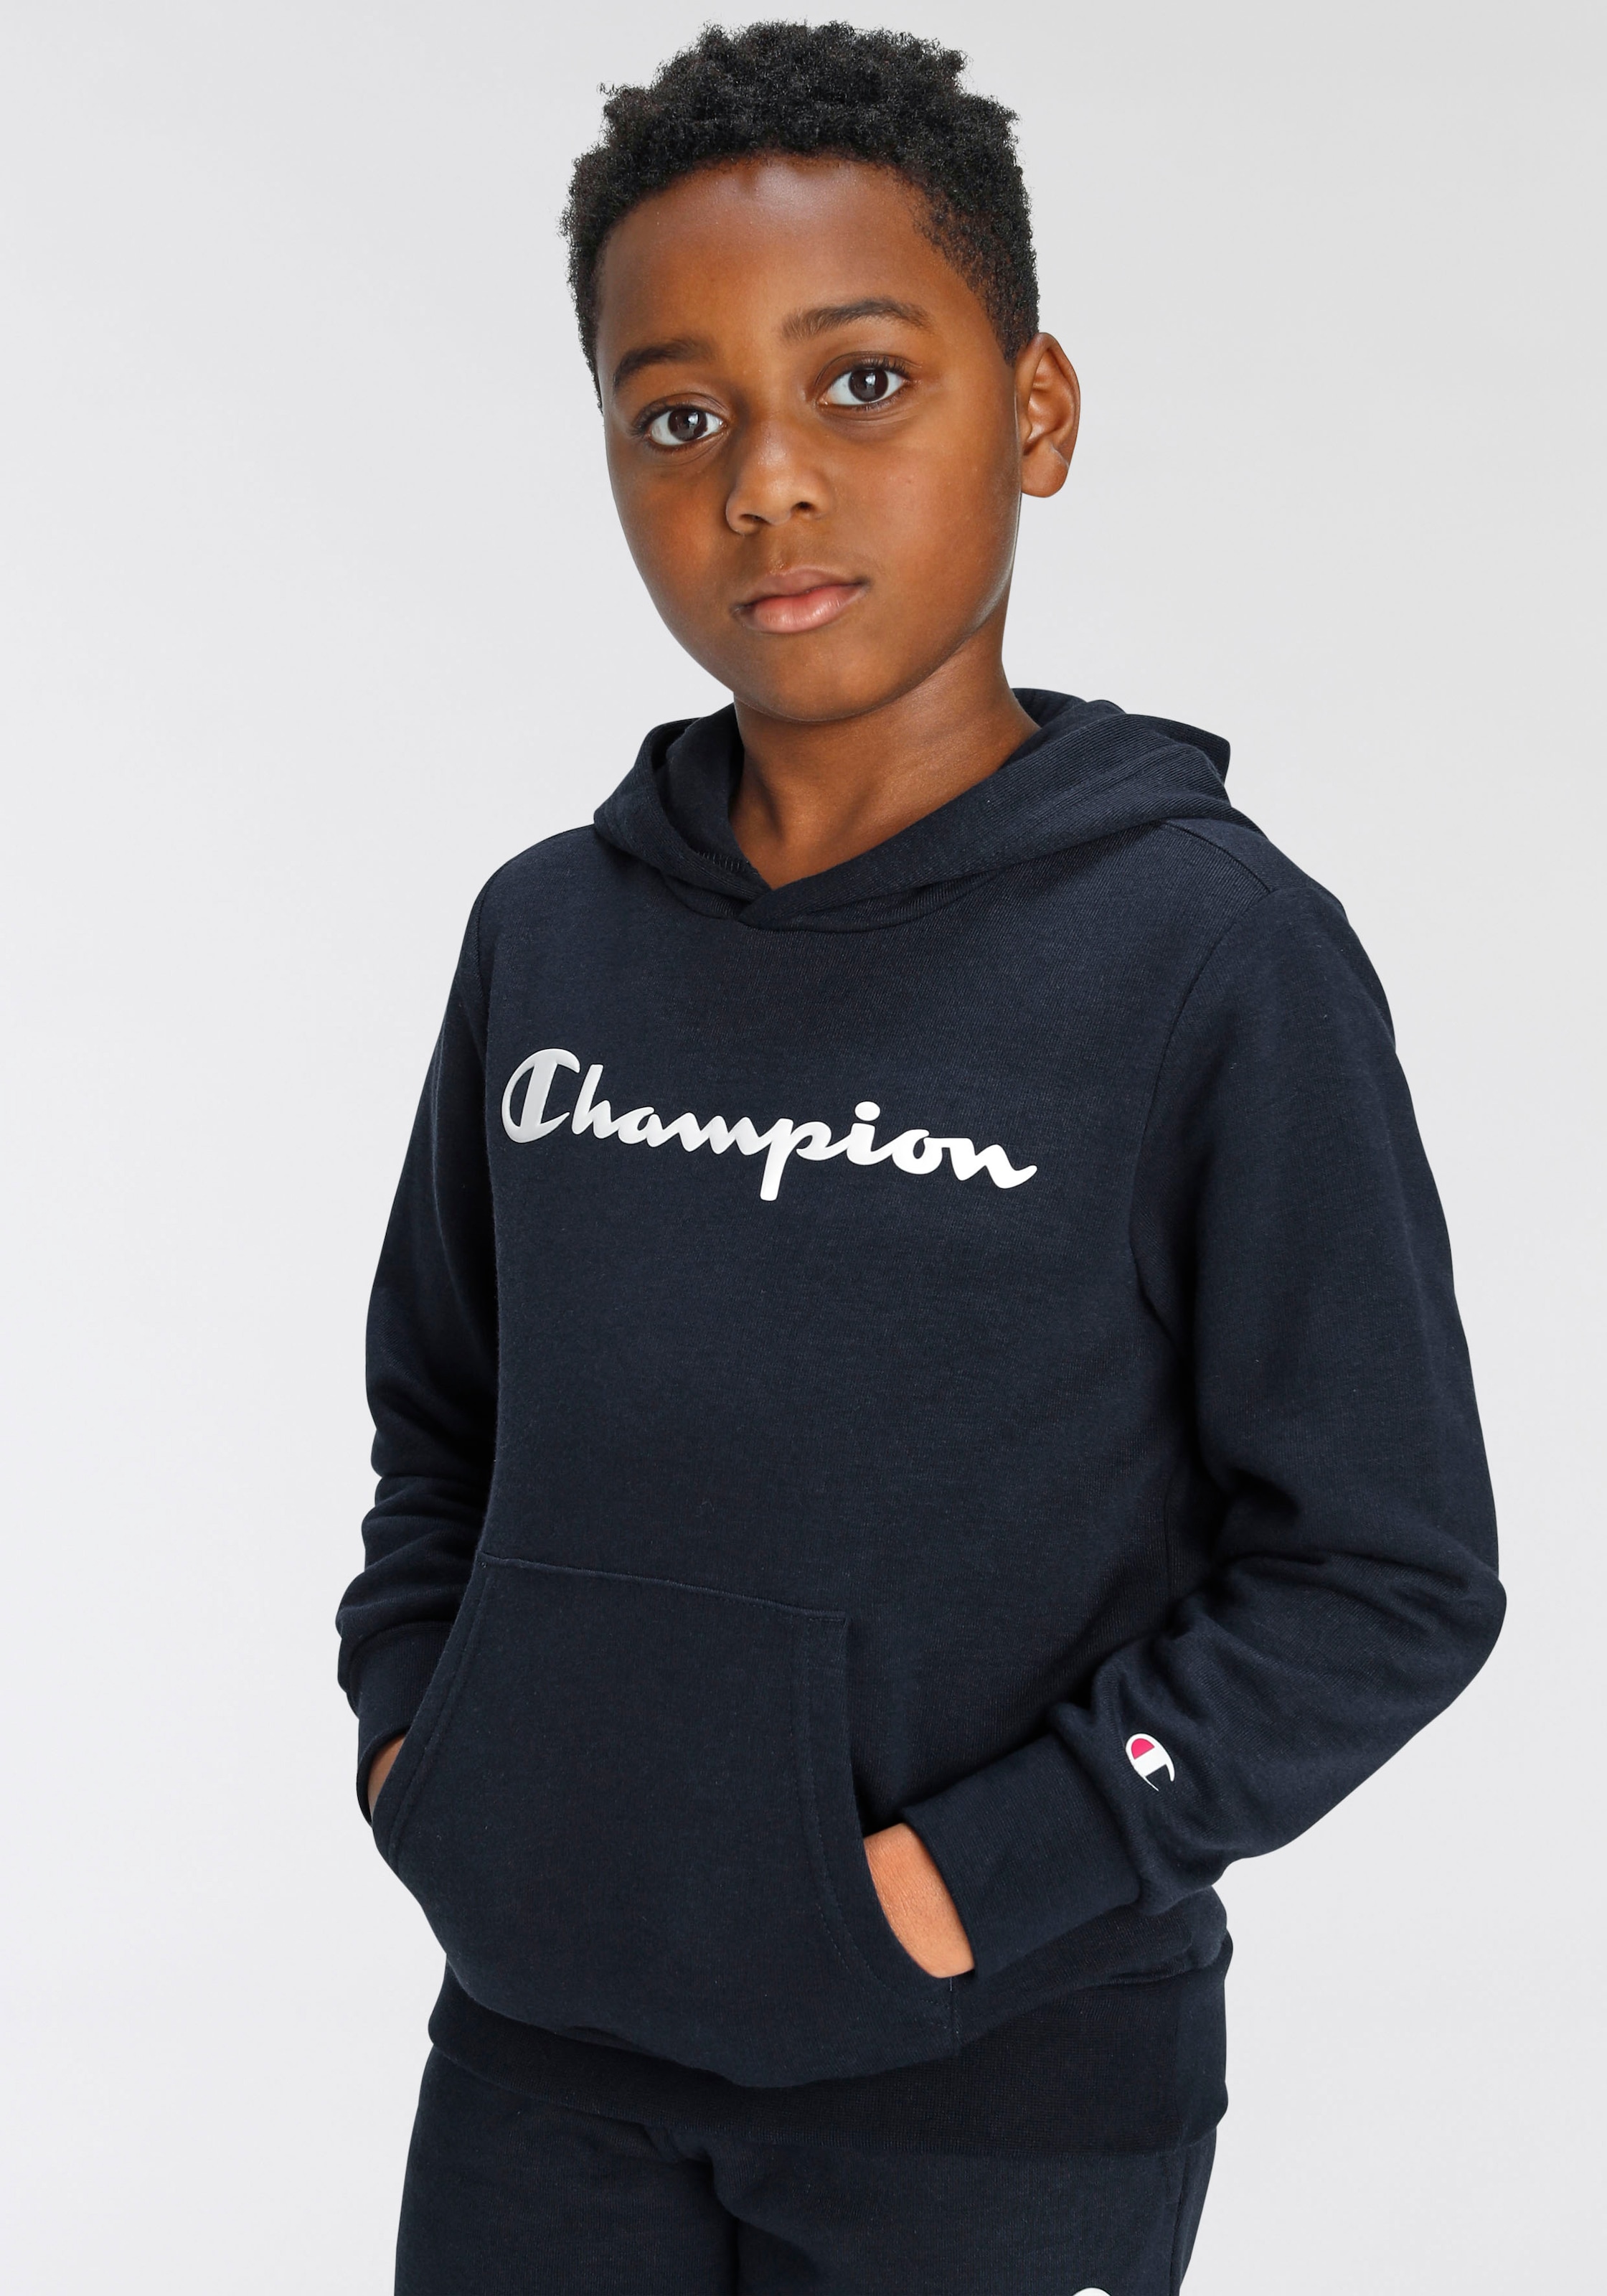 Champion Sweatshirt im Online OTTO Shop